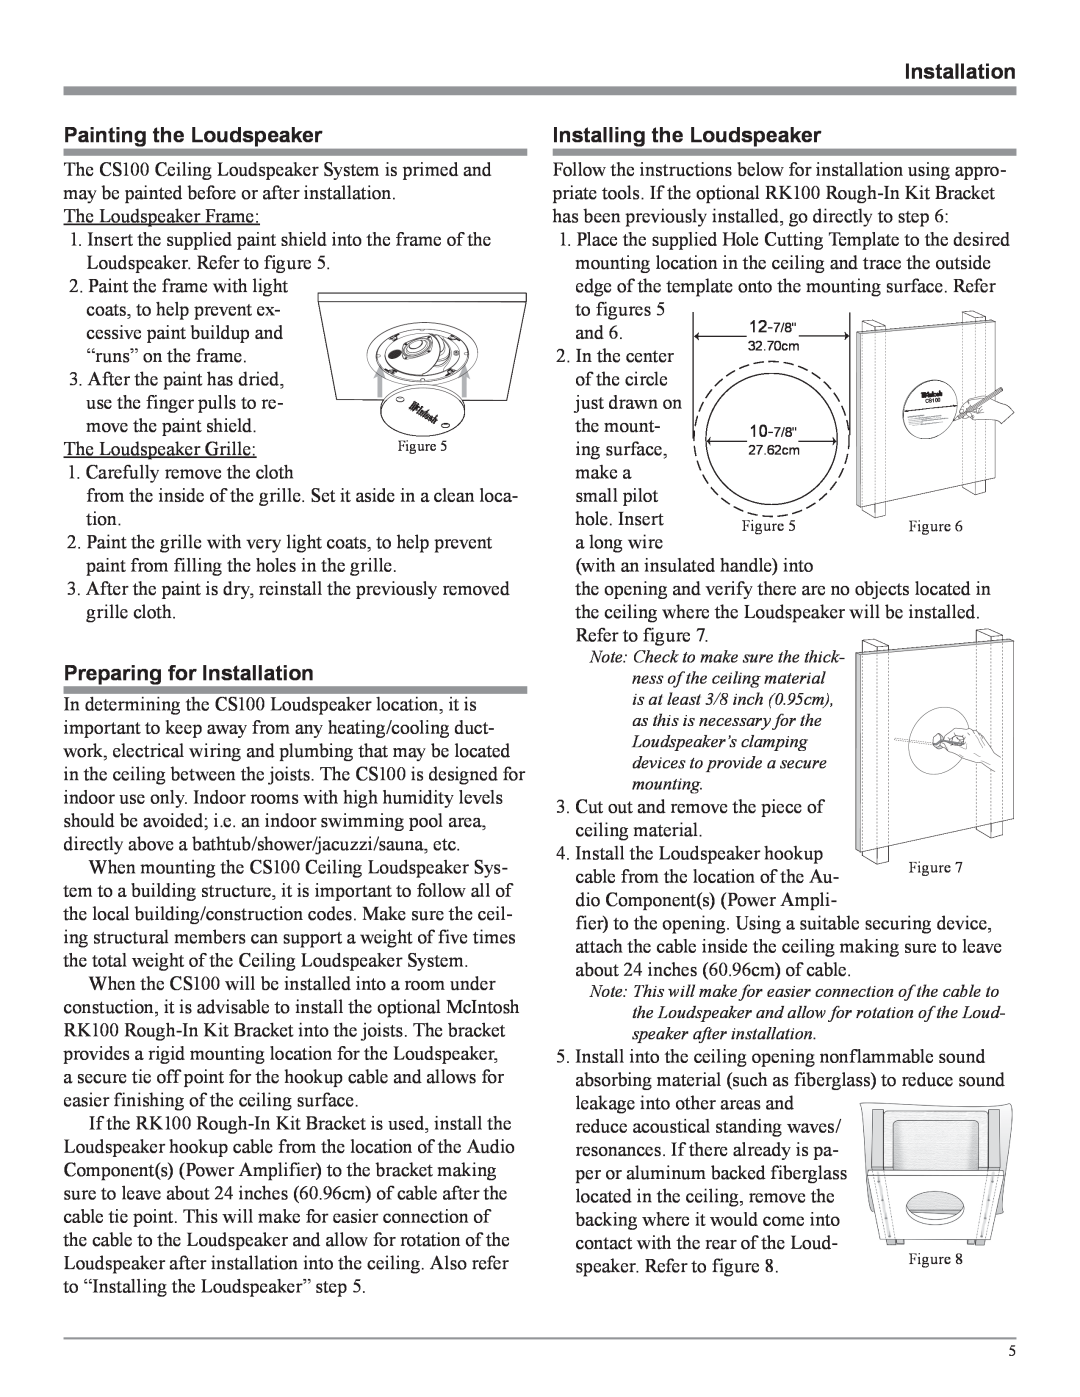 McIntosh CS100 manual Painting the Loudspeaker, Preparing for Installation, Installing the Loudspeaker 